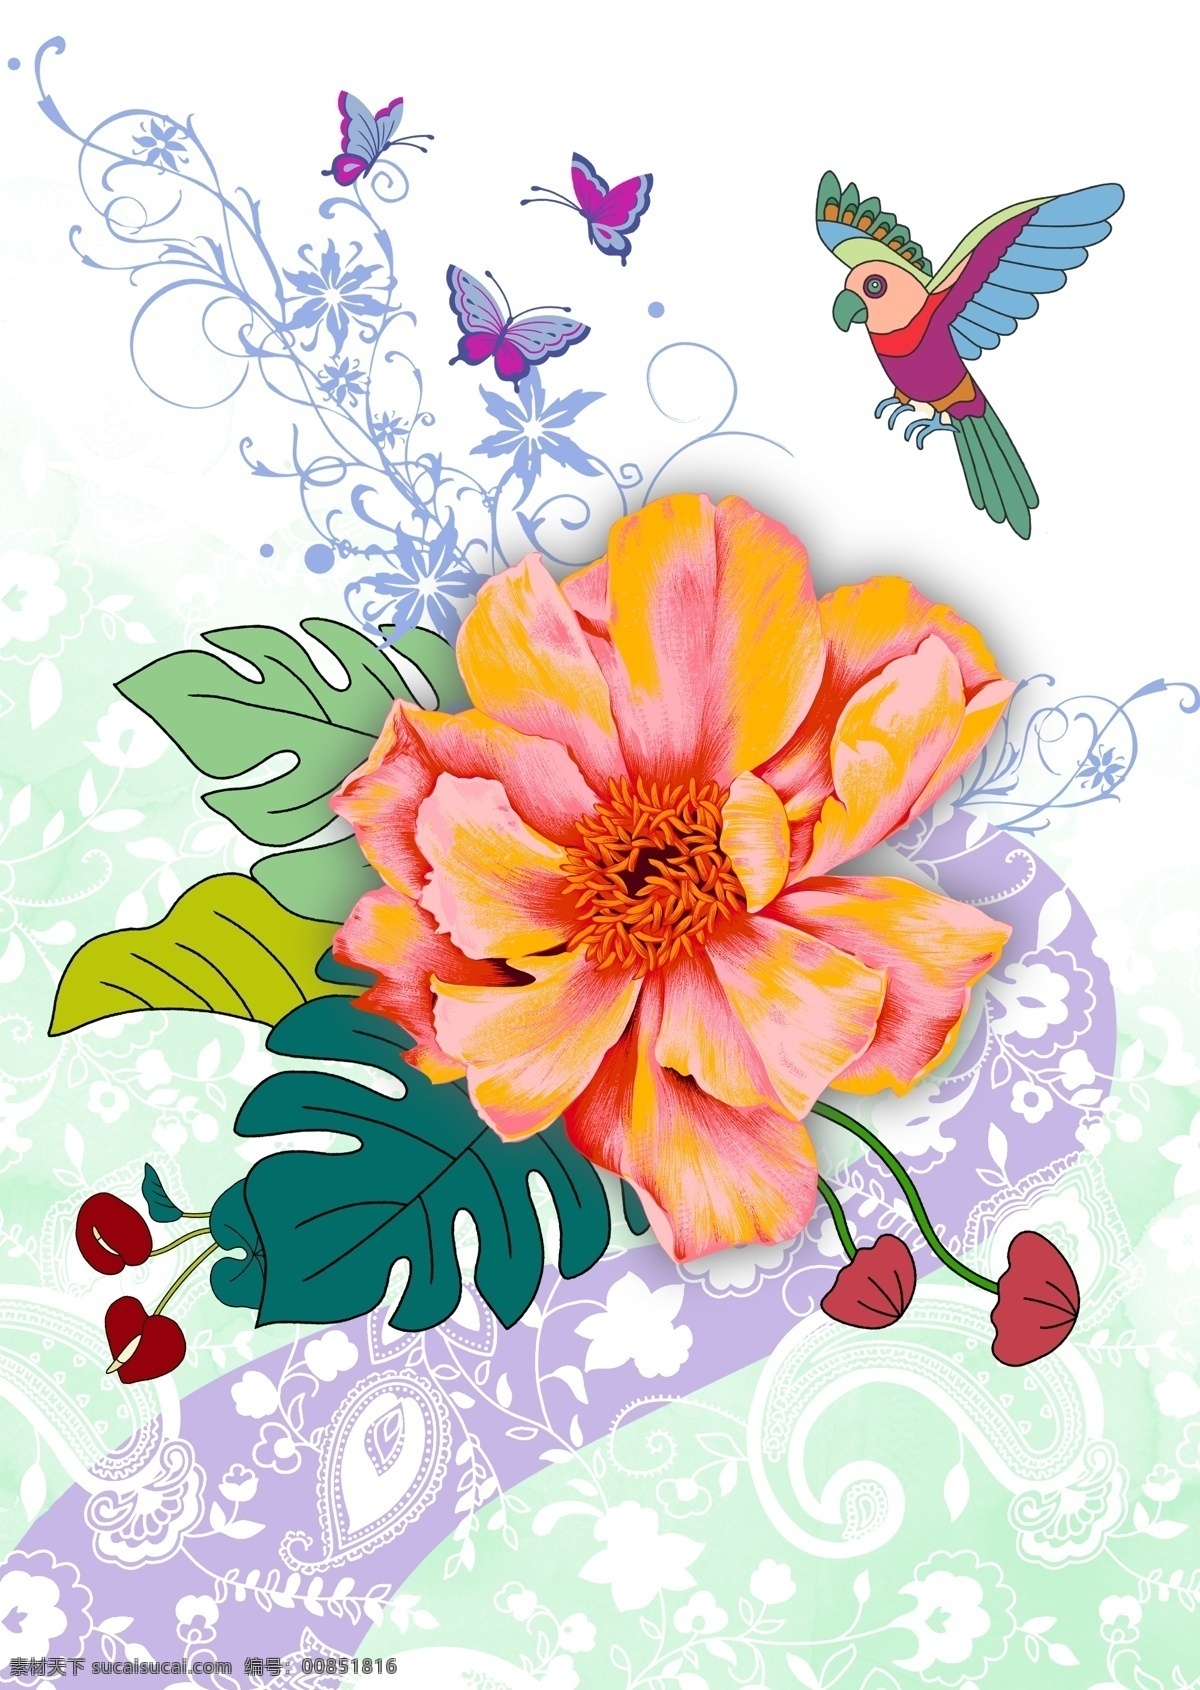 花朵蝴蝶 鸟儿 蝴蝶花朵 花纹底图 花背景 底图花朵 花朵植物 底图背景 花 花朵 共享各类素材